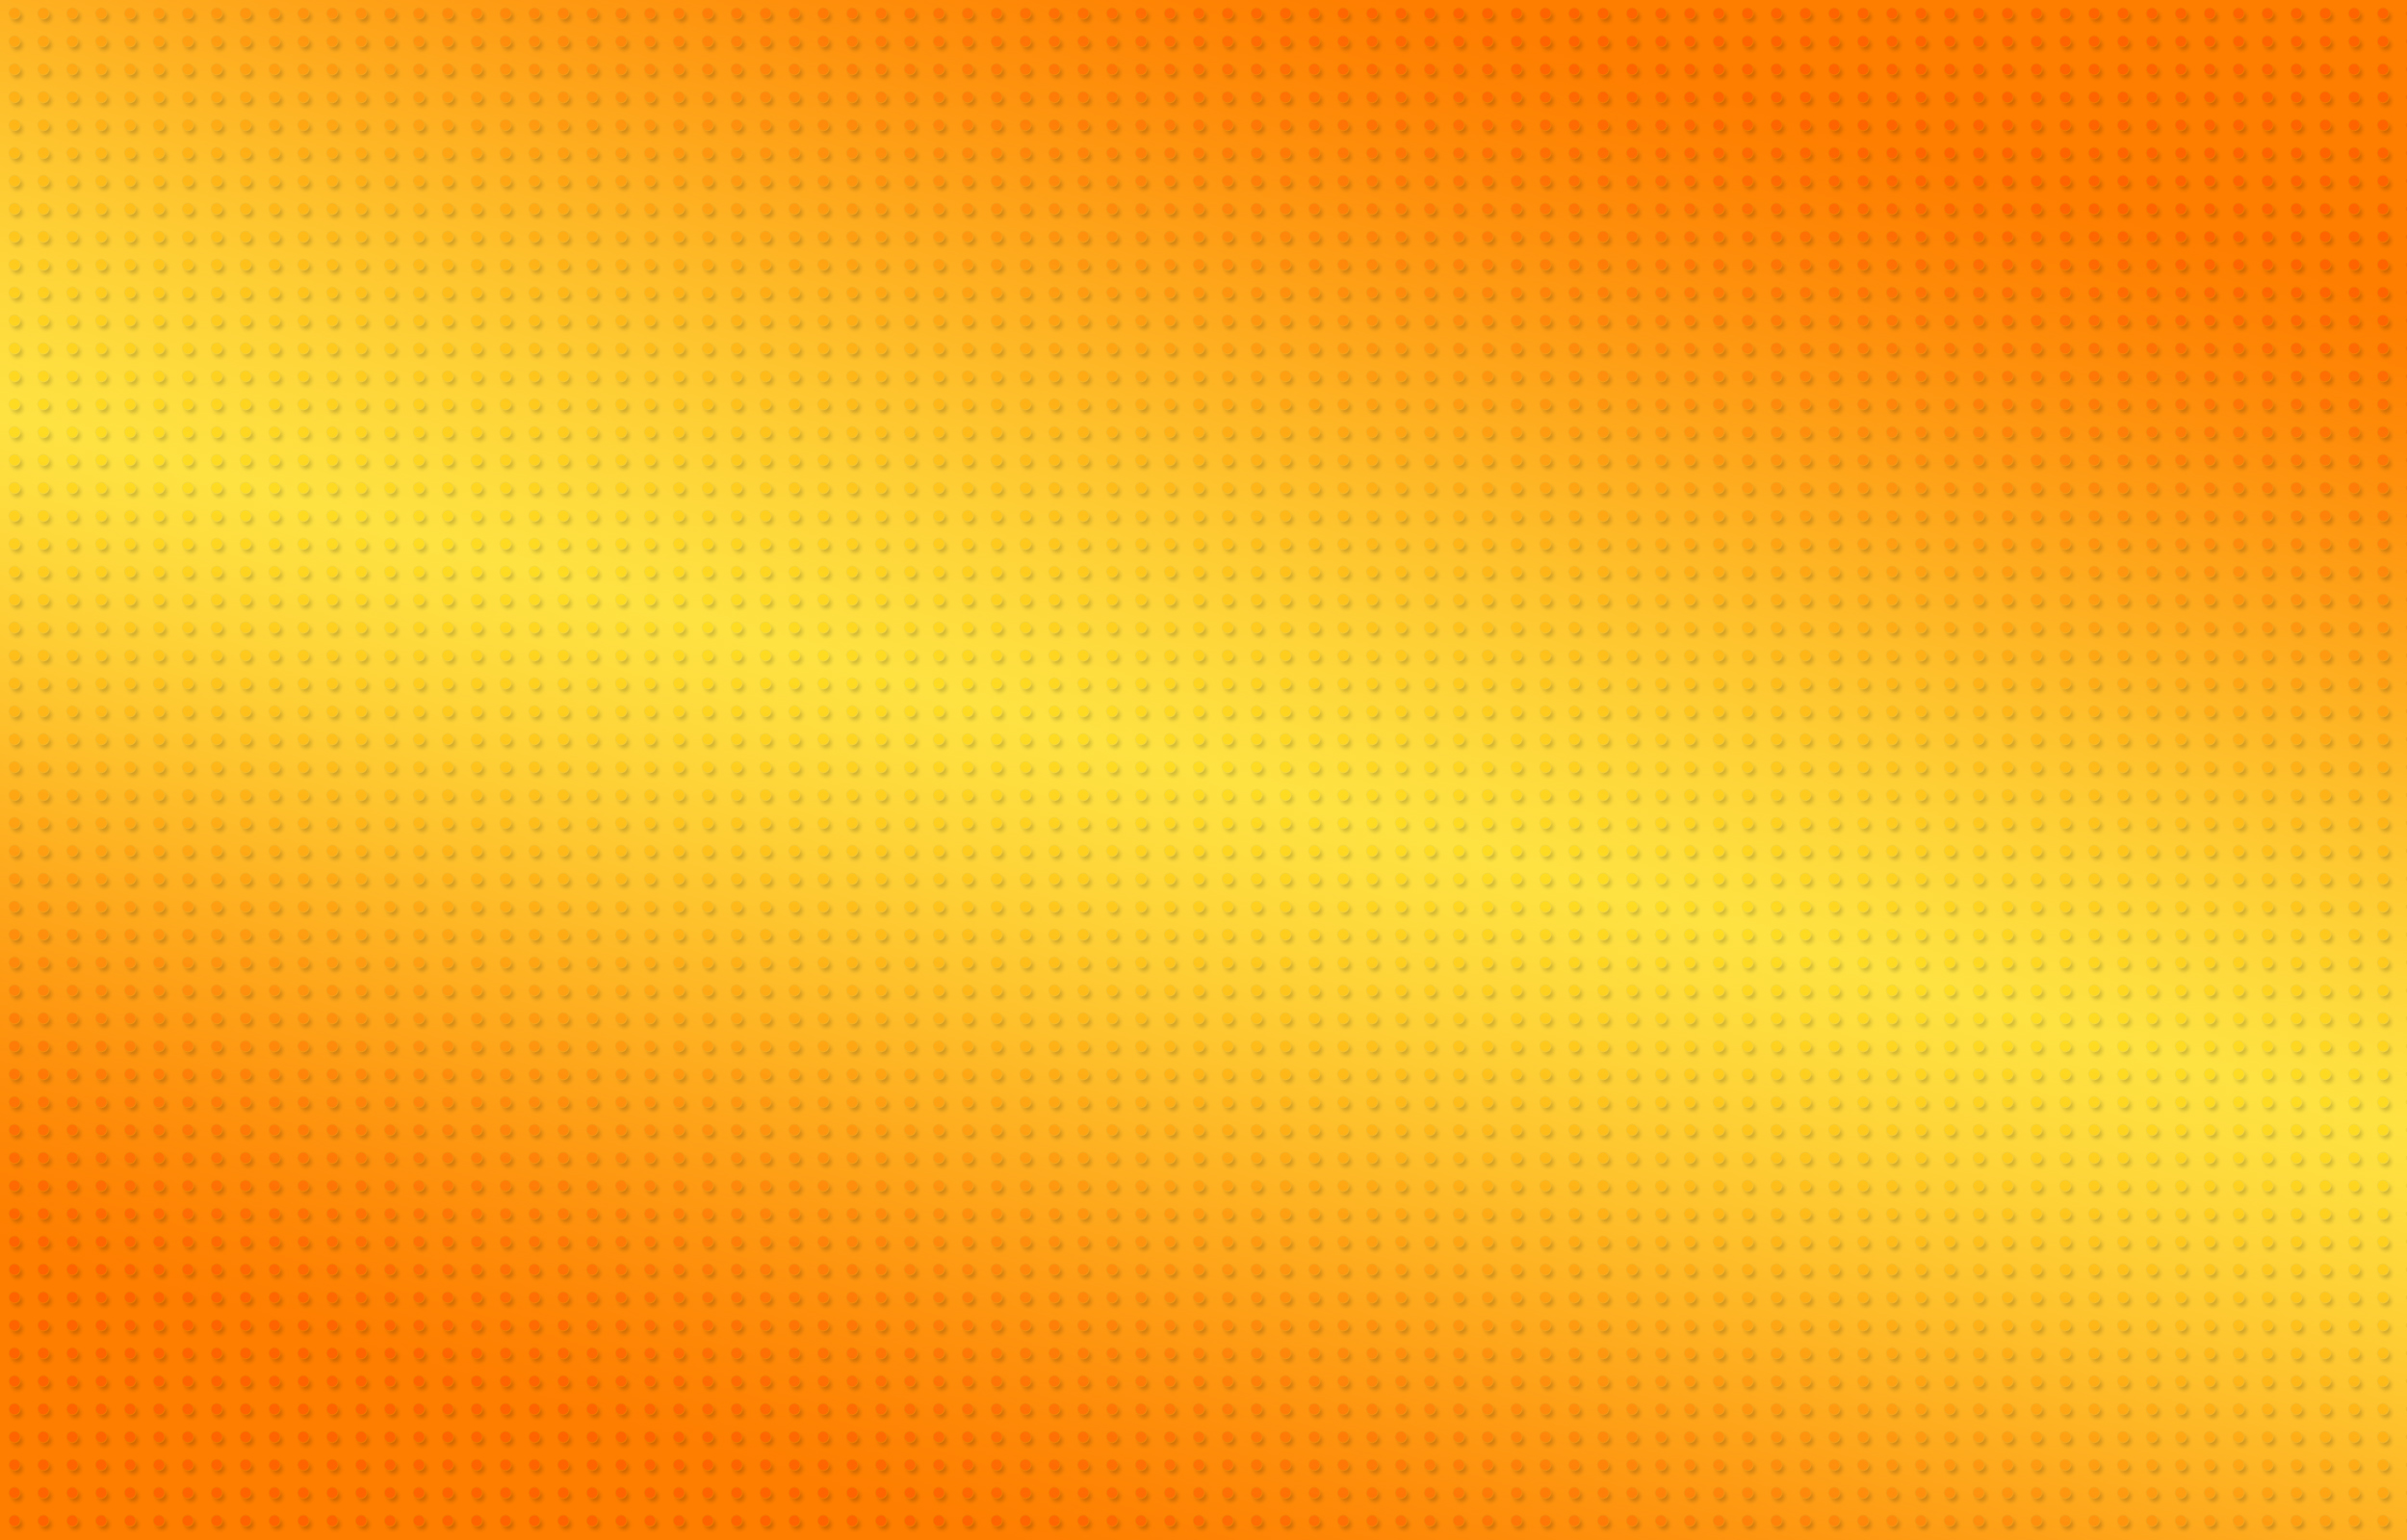 NickoLass đã tạo ra hình ảnh với gam màu cam rực rỡ - Orange, chắc chắn sẽ đem lại trải nghiệm tuyệt vời cho người xem. Khám phá hình ảnh này ngay để cảm nhận tinh thần năng động của màu cam.